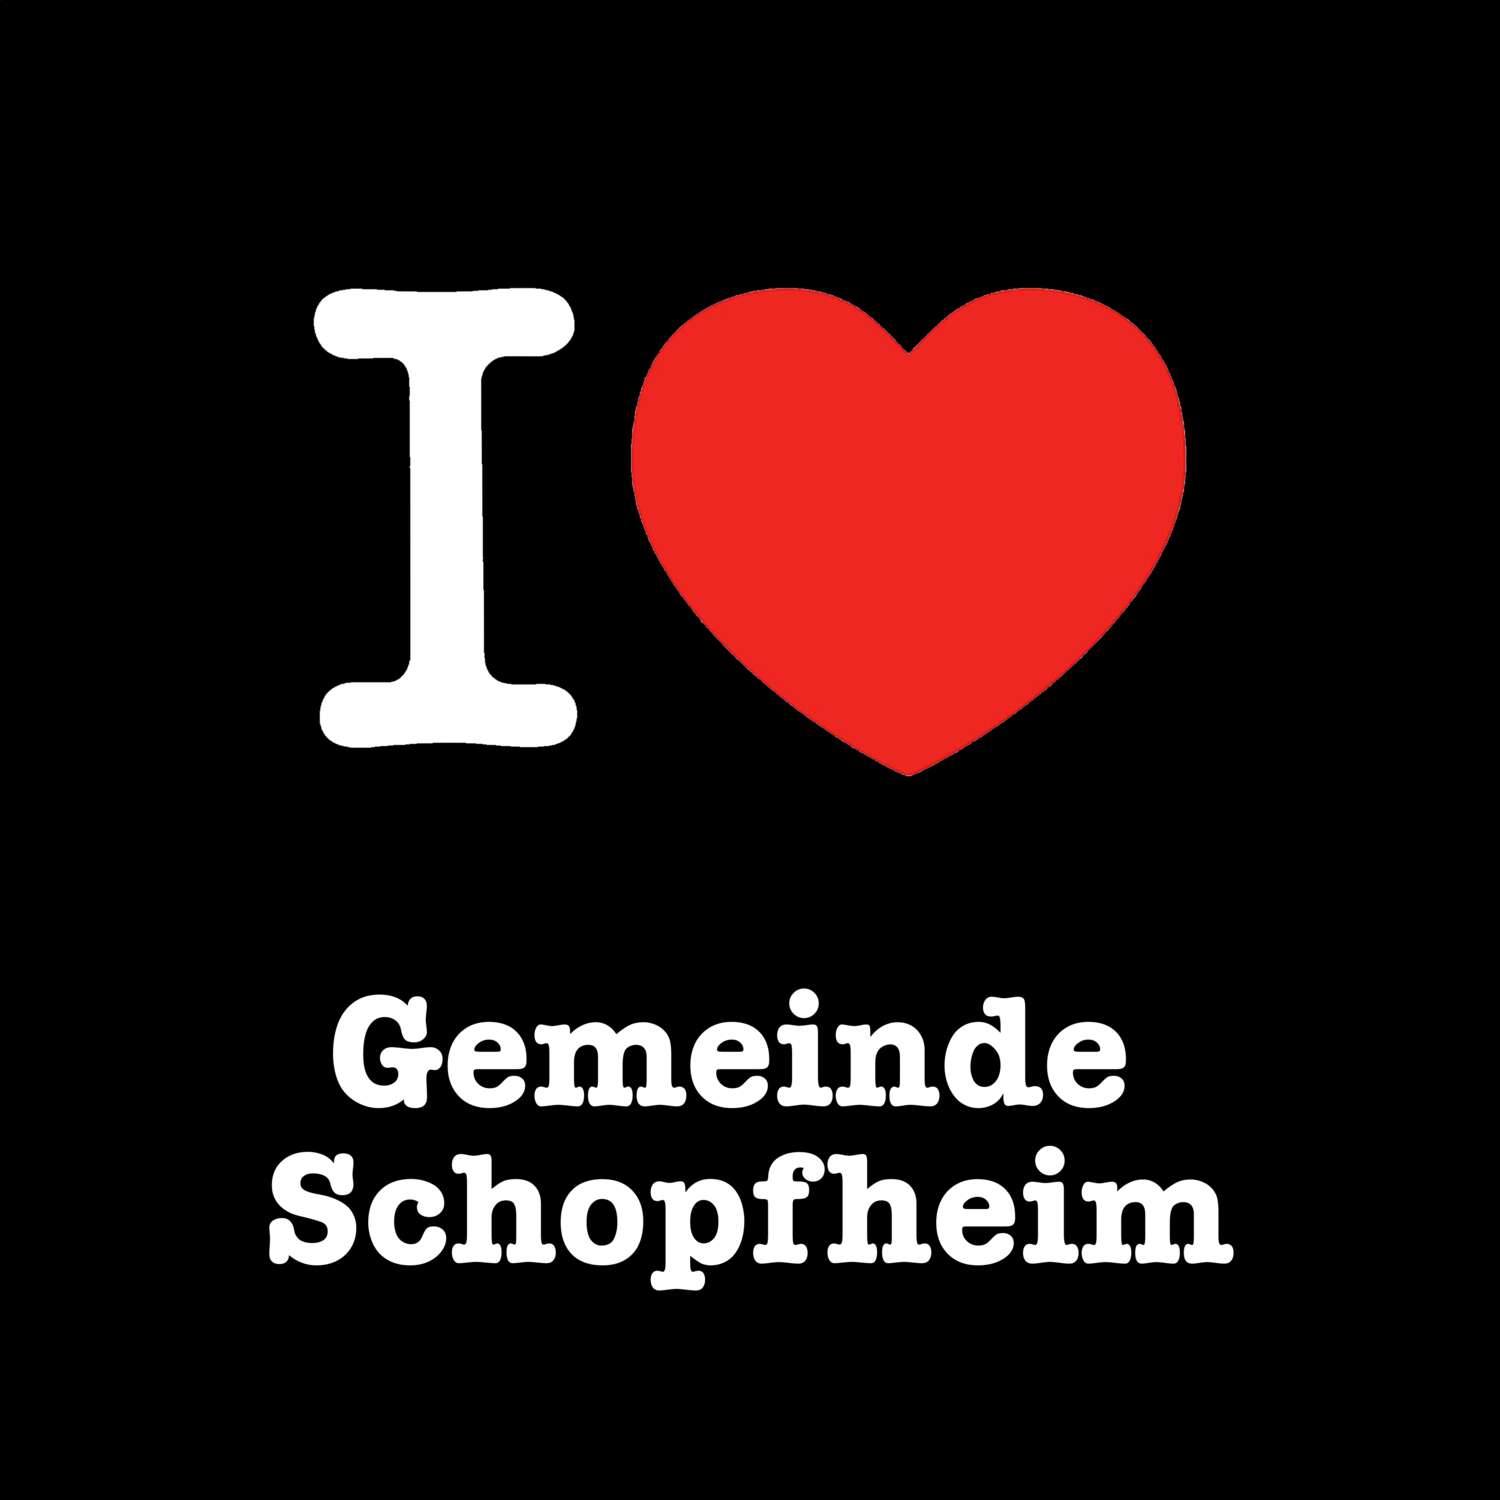 Gemeinde Schopfheim T-Shirt »I love«